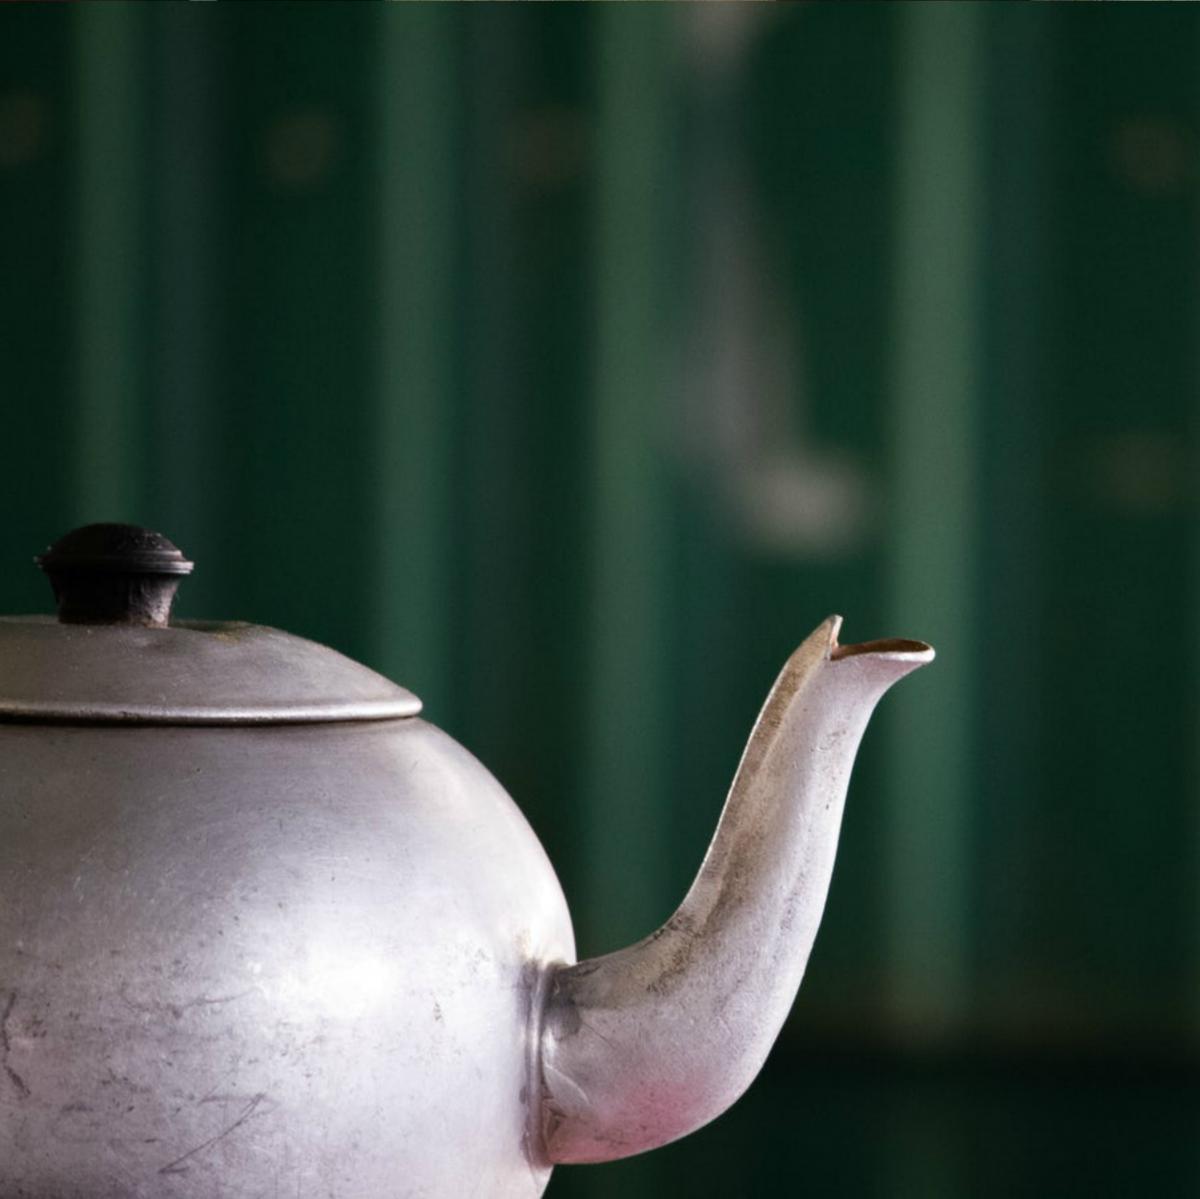 Китайский Чай Пуэр Свойства Польза И Вред - подробнее о чае